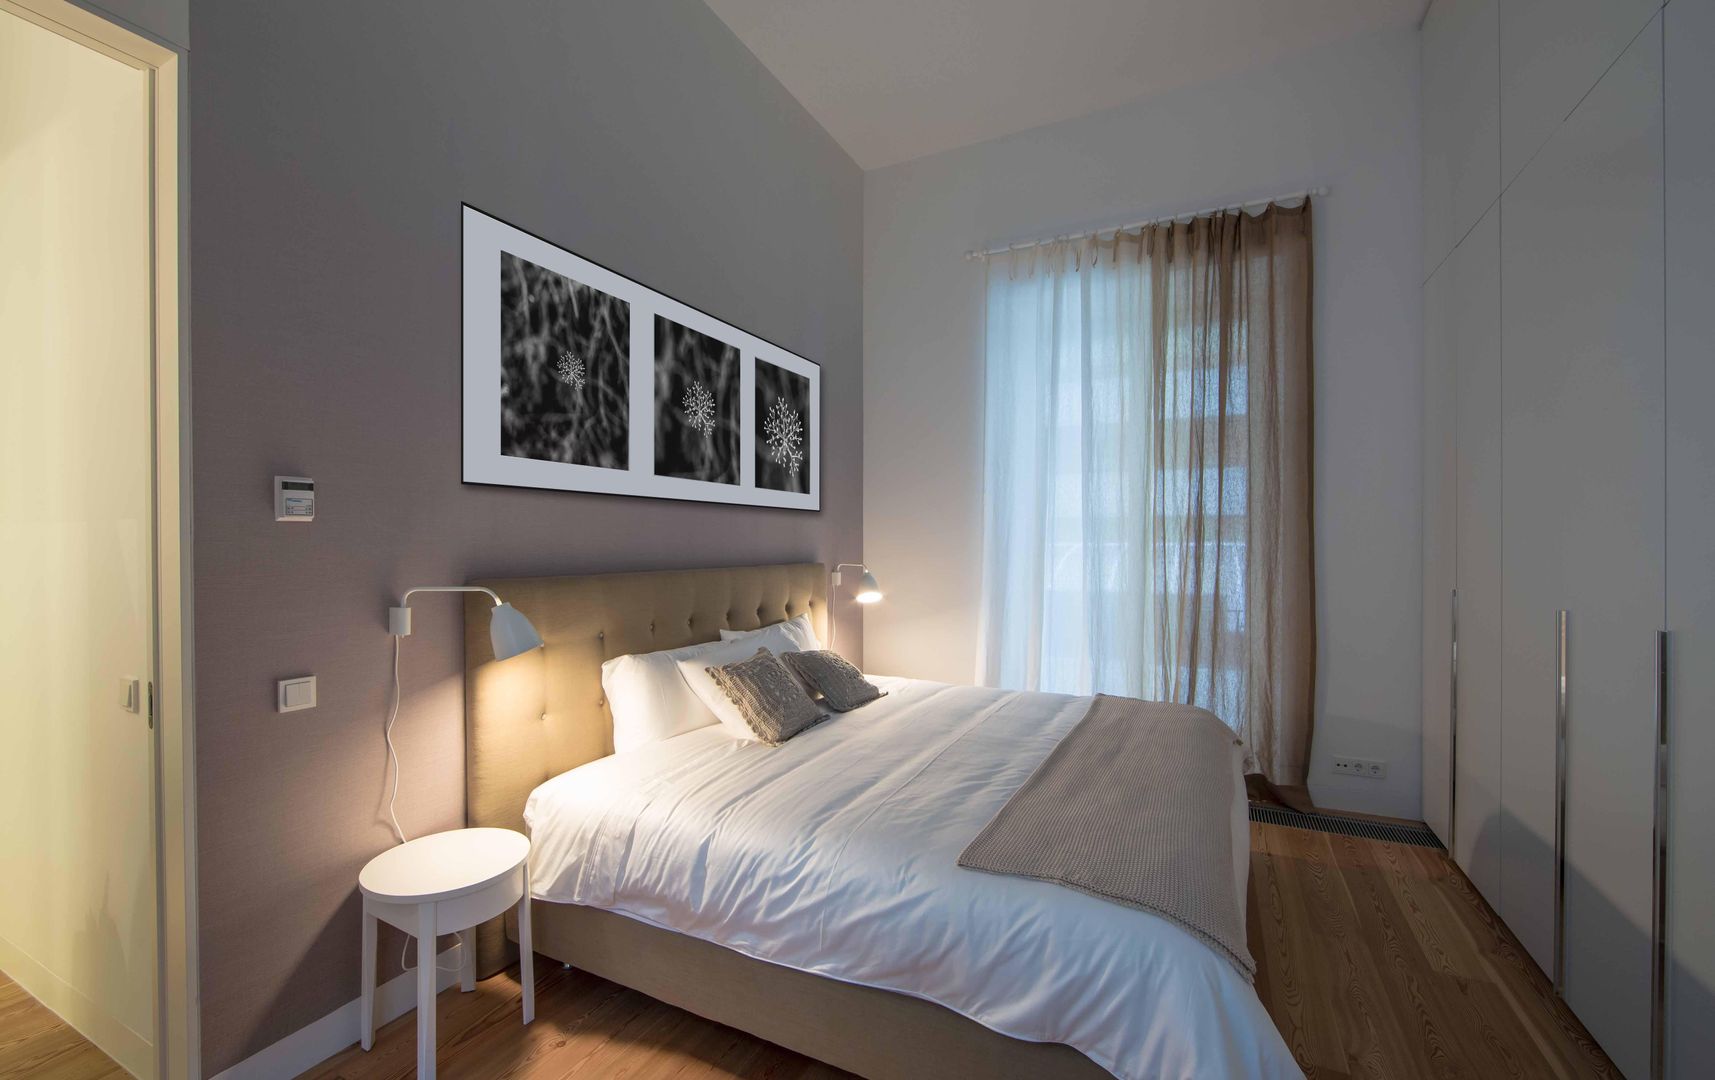 Um apartamento moderno - retro, Architect Your Home Architect Your Home Спальня в стиле модерн